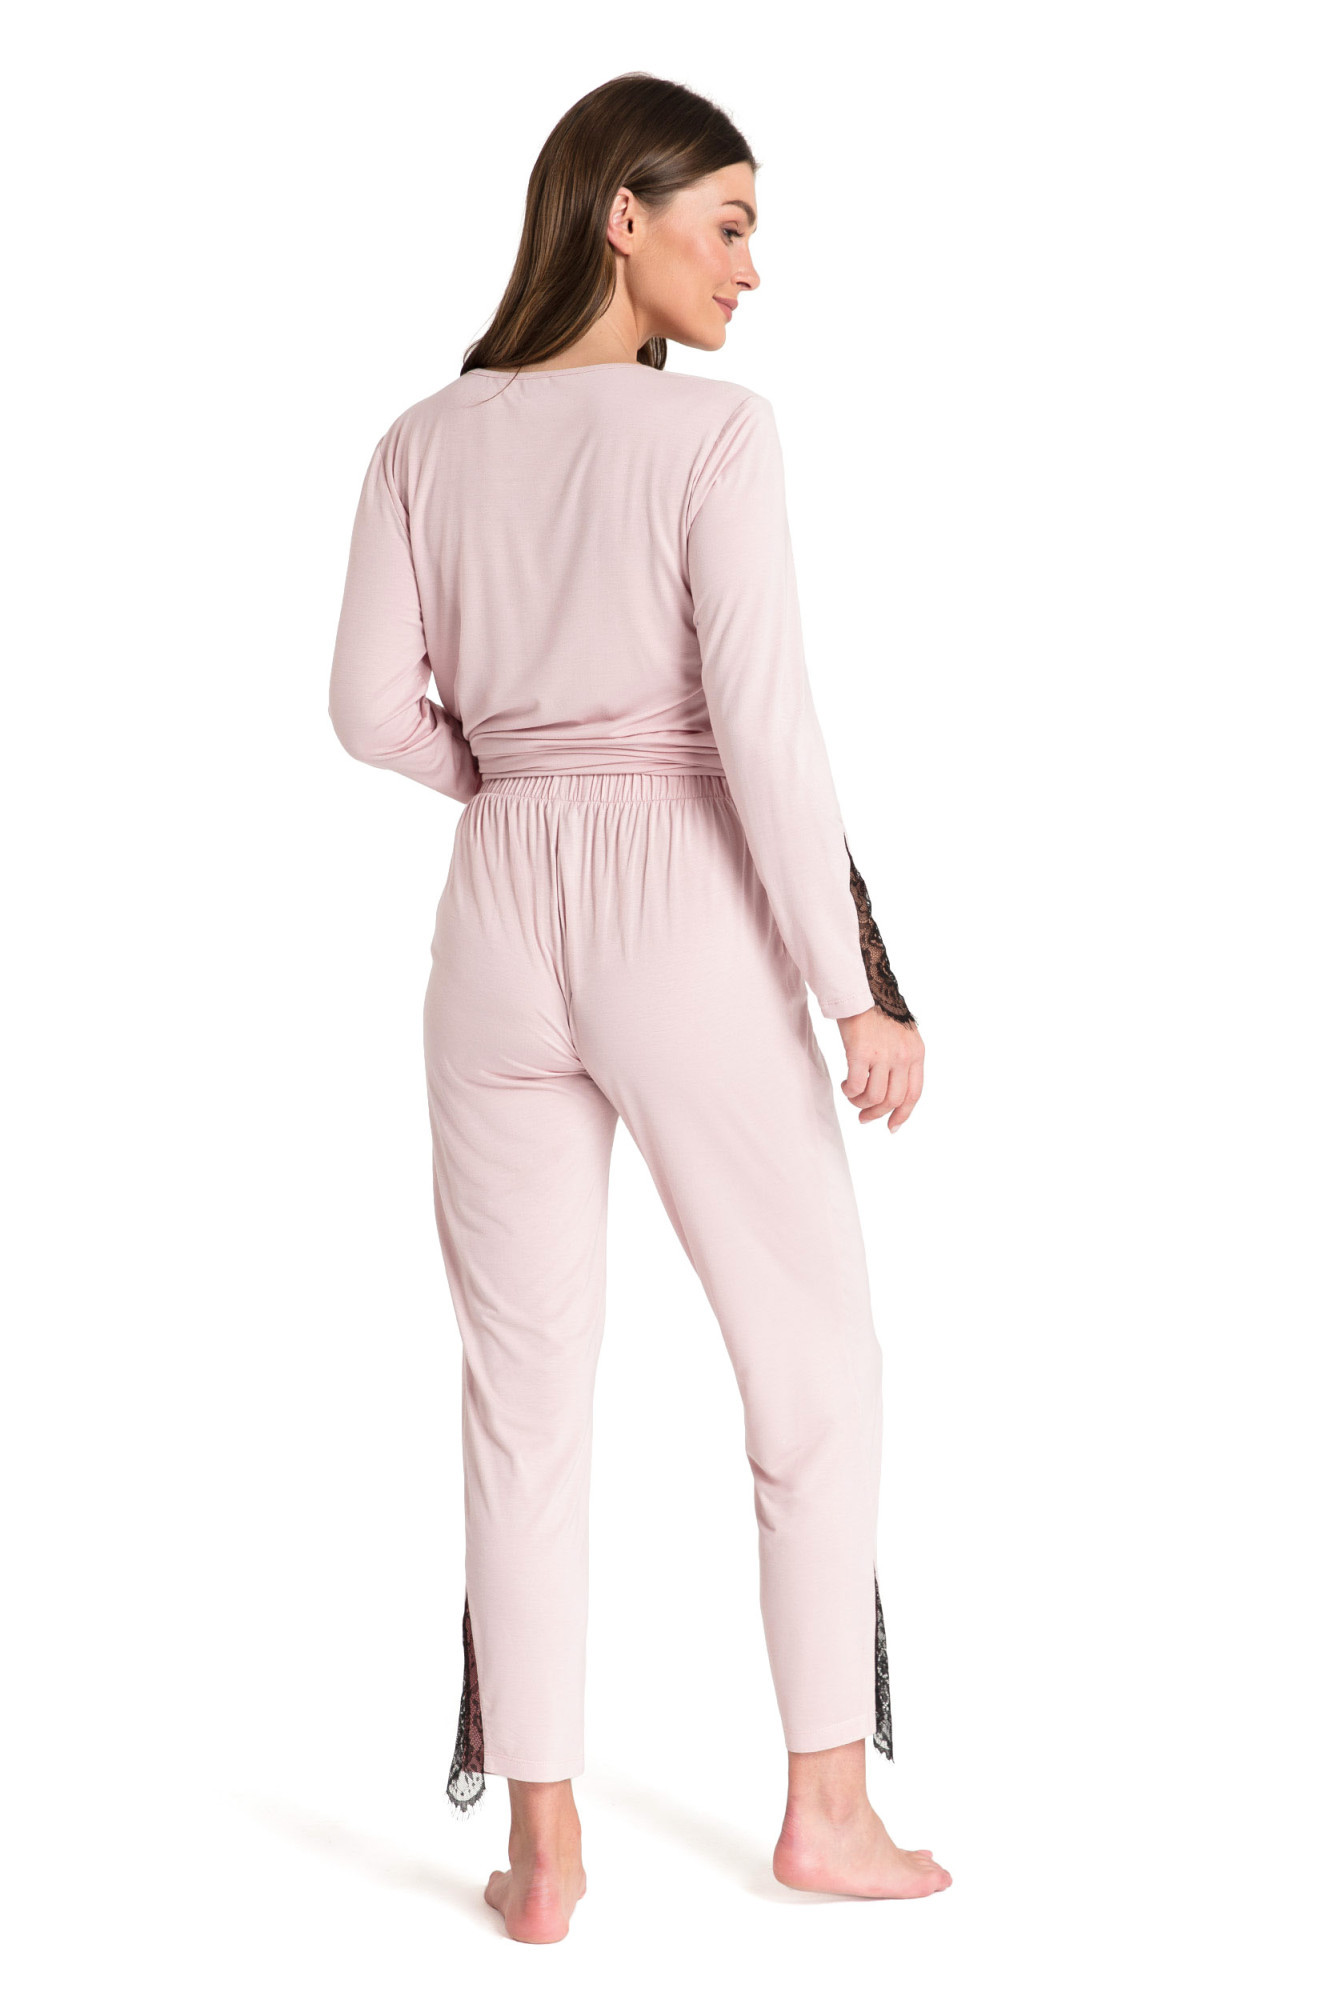 Kalhoty LaLupa LA073 Pink XL